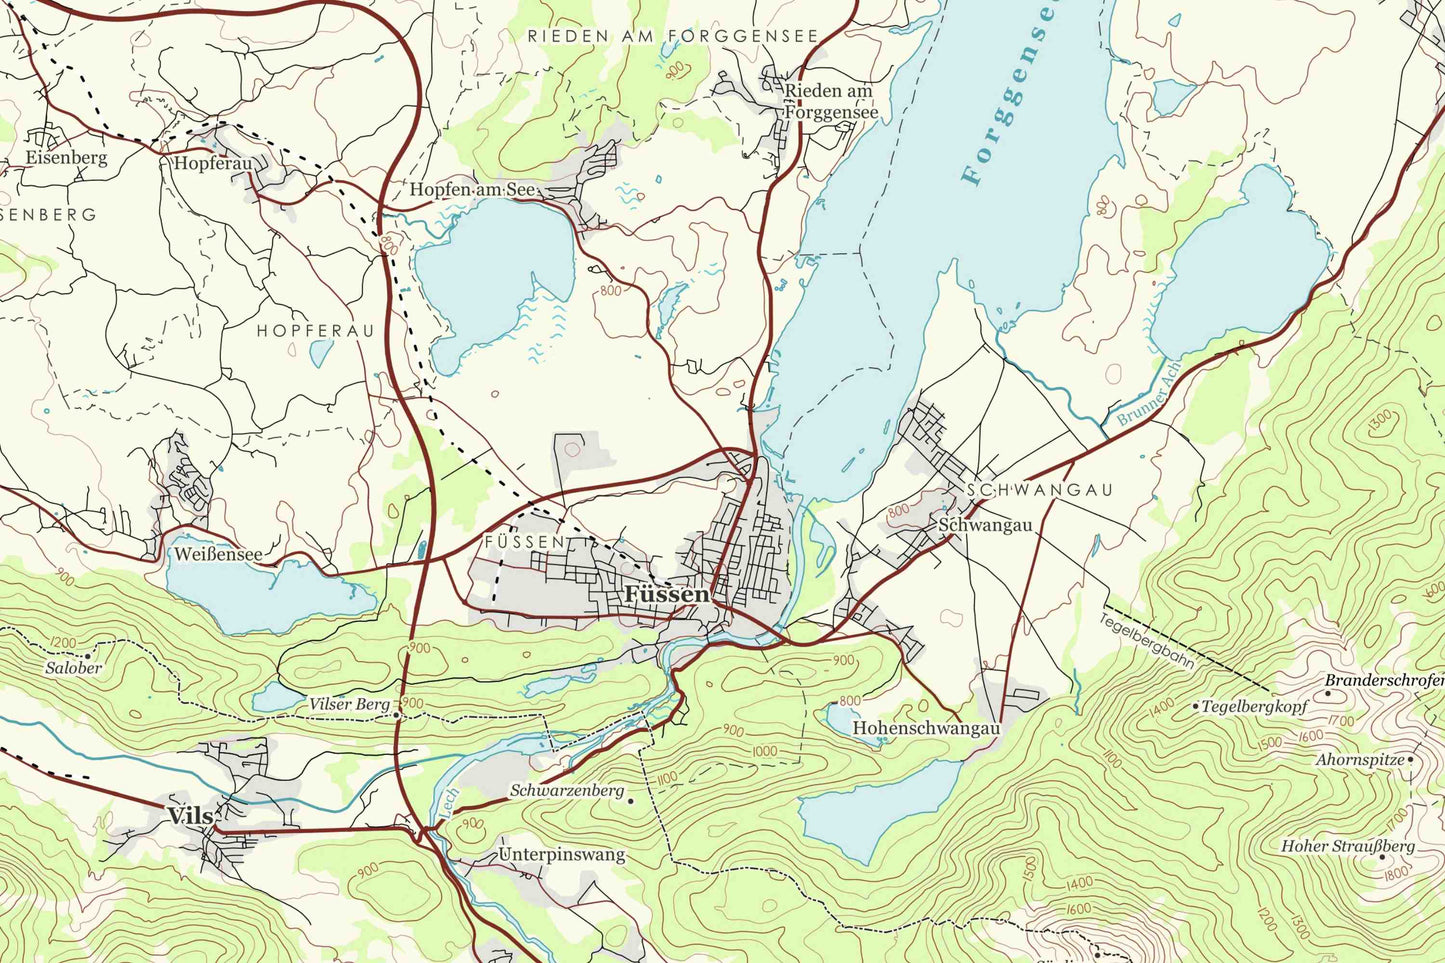 Füssen - Vintage Topographische Landkarte,  Allgäuer Alpen